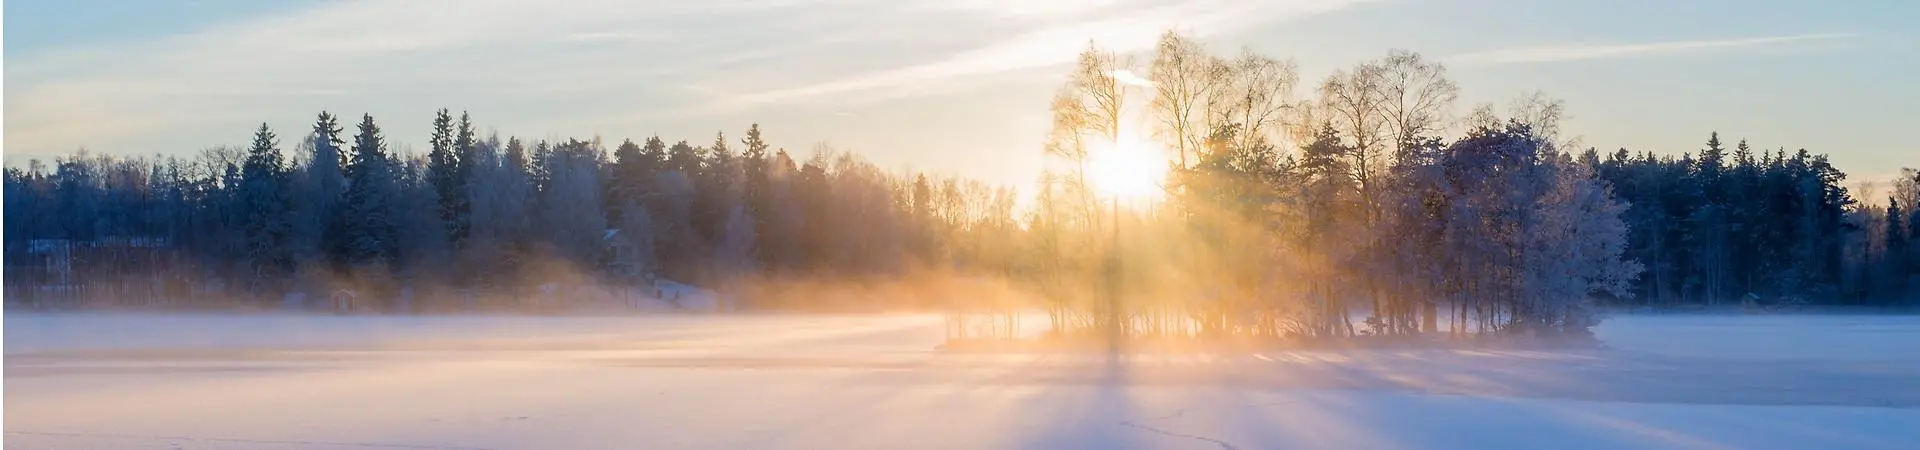 Vintersol silar genom träd, foto: Conny Sjöström